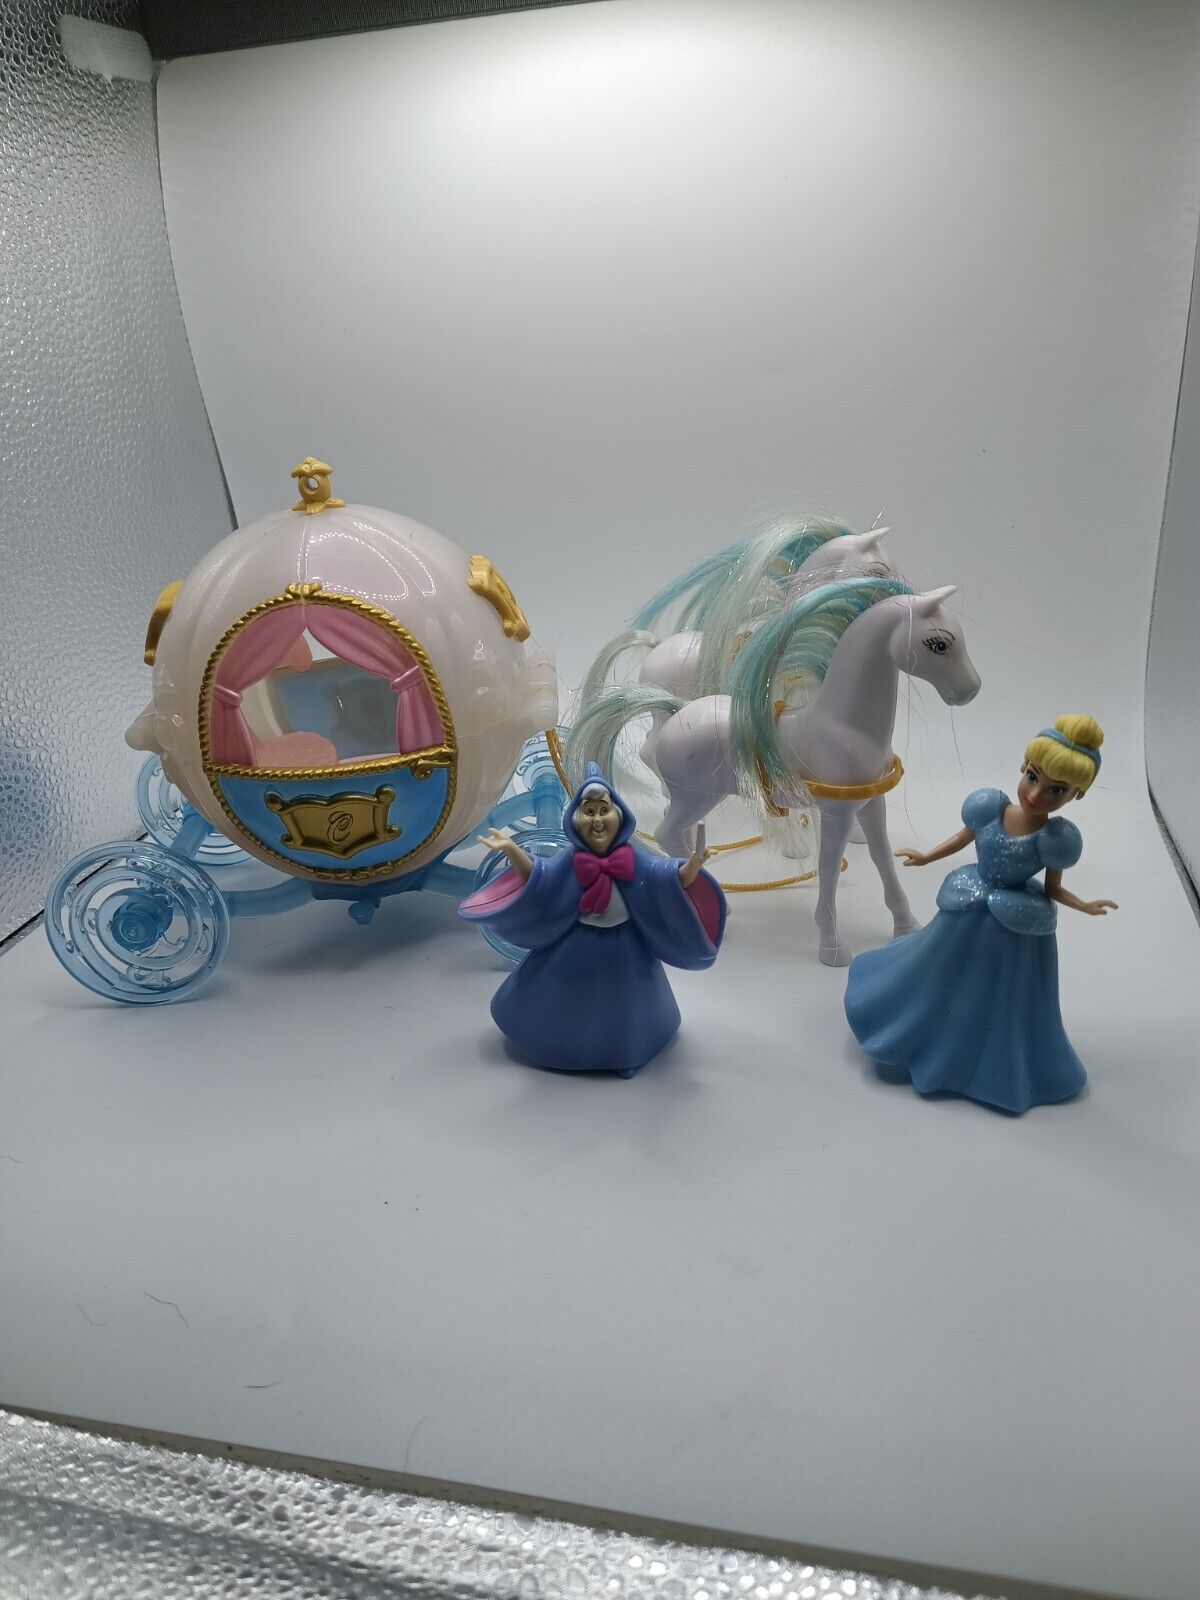 2009 Mattel Disney Princess Cinderella Magiclip Carriage Horses Dolls And Dress